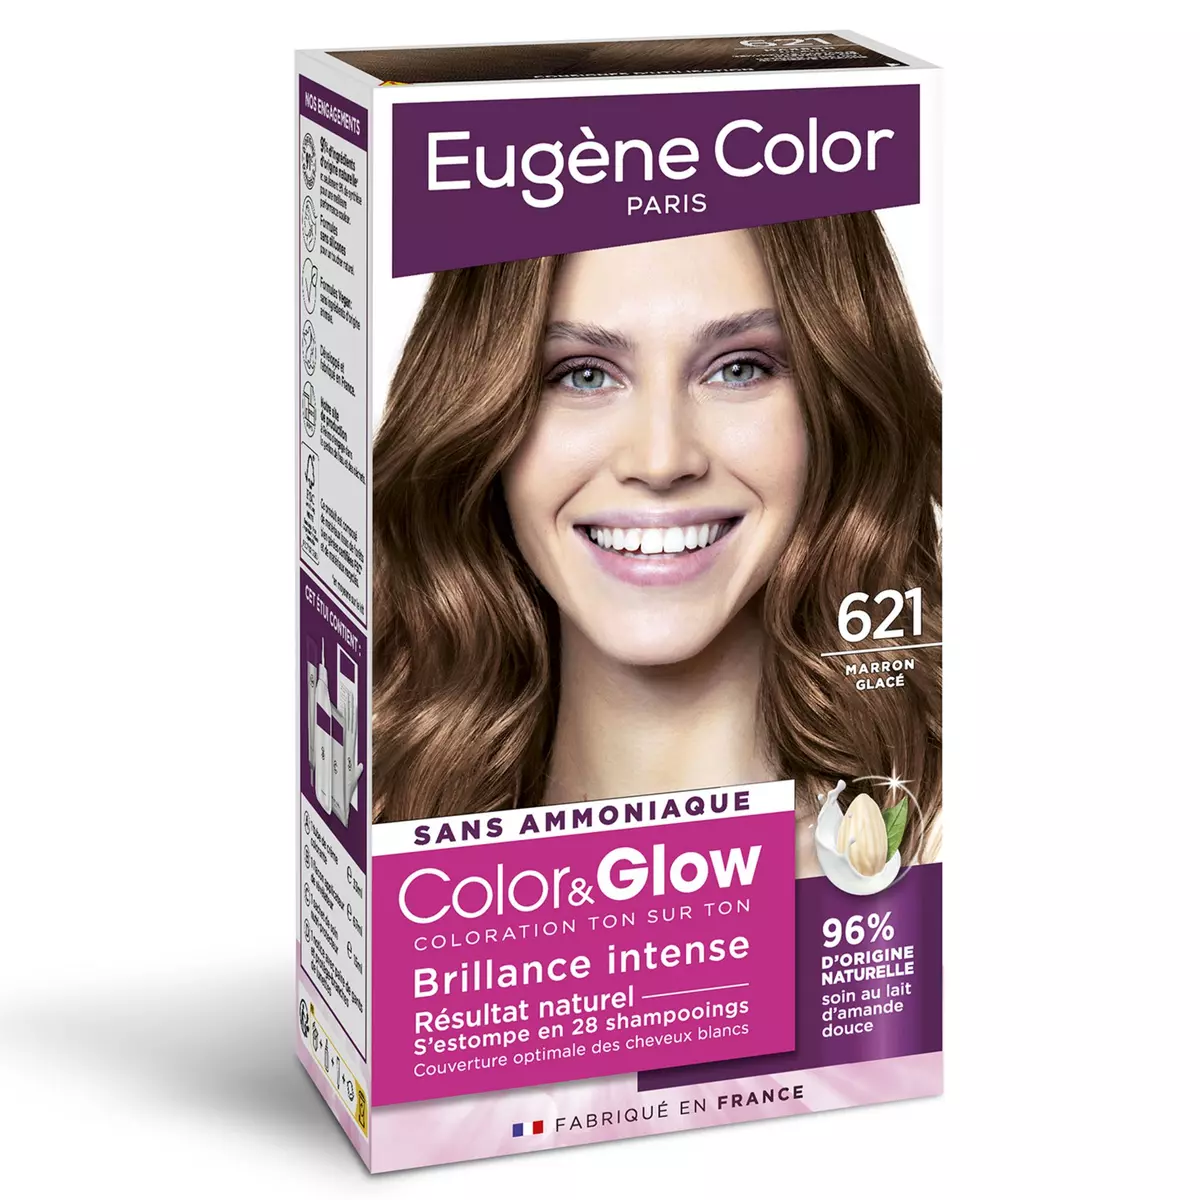 EUGENE COLOR Color & Glow coloration ton sur ton 621 marron glacé 1 kit